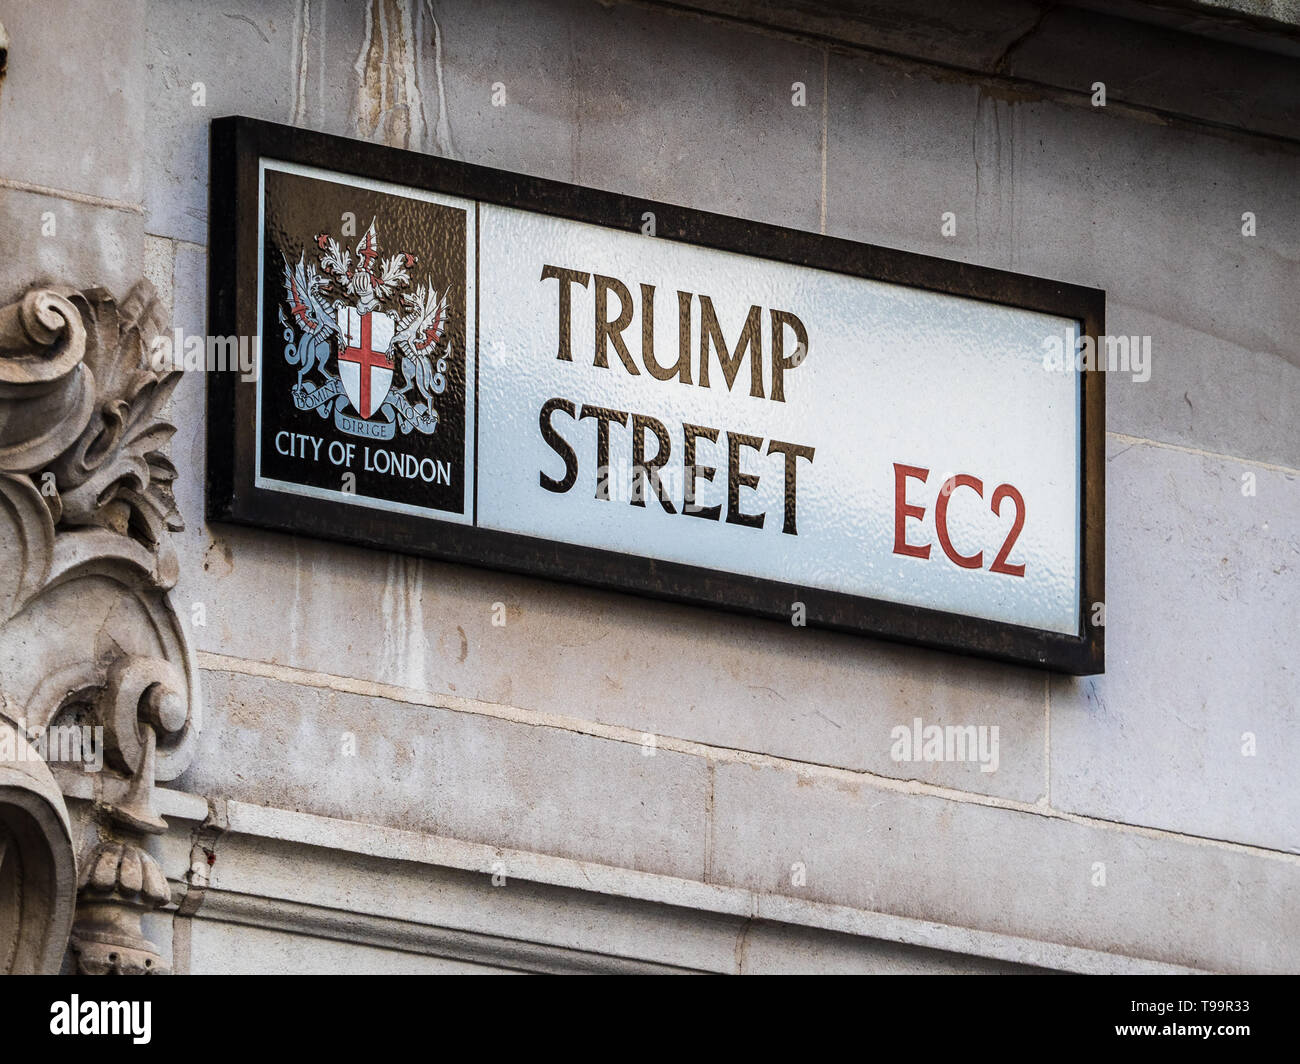 Trump Street EC2 dans la ville de Londres quartier financier. Datant du début C18e, rue d'atout que l'on croit être le domicile de trompette les décideurs ; Banque D'Images